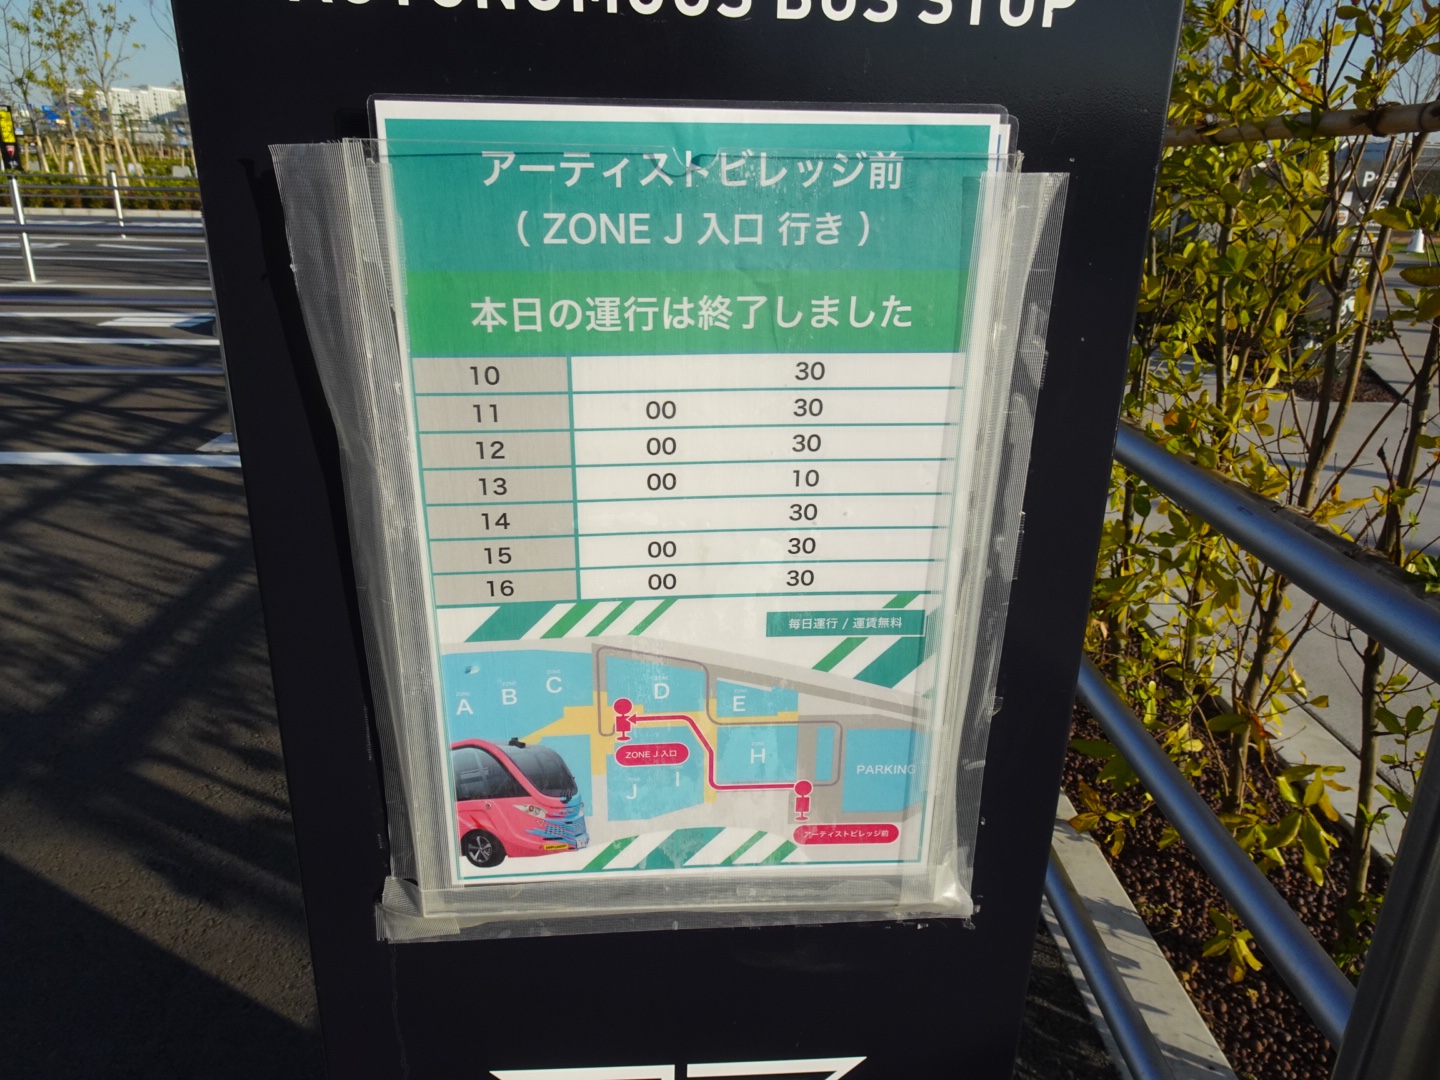 羽田イノベーションシティ　自動運転バス　HANEDA INNOVATION CITY